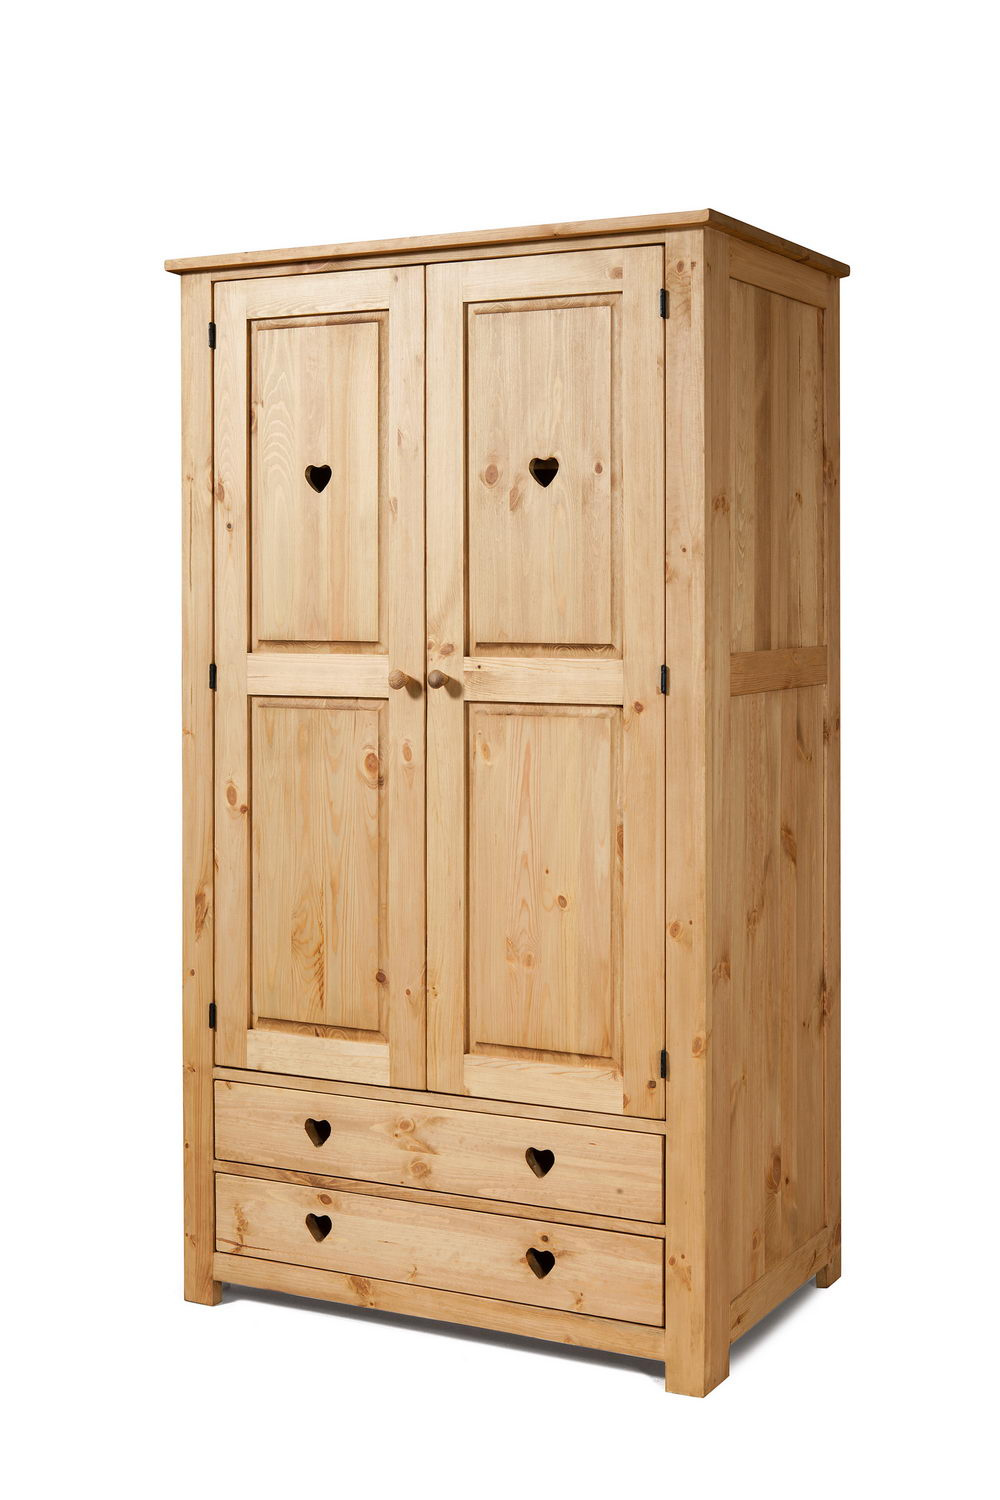   Шкаф деревянный с ящиками Арль KTA22  